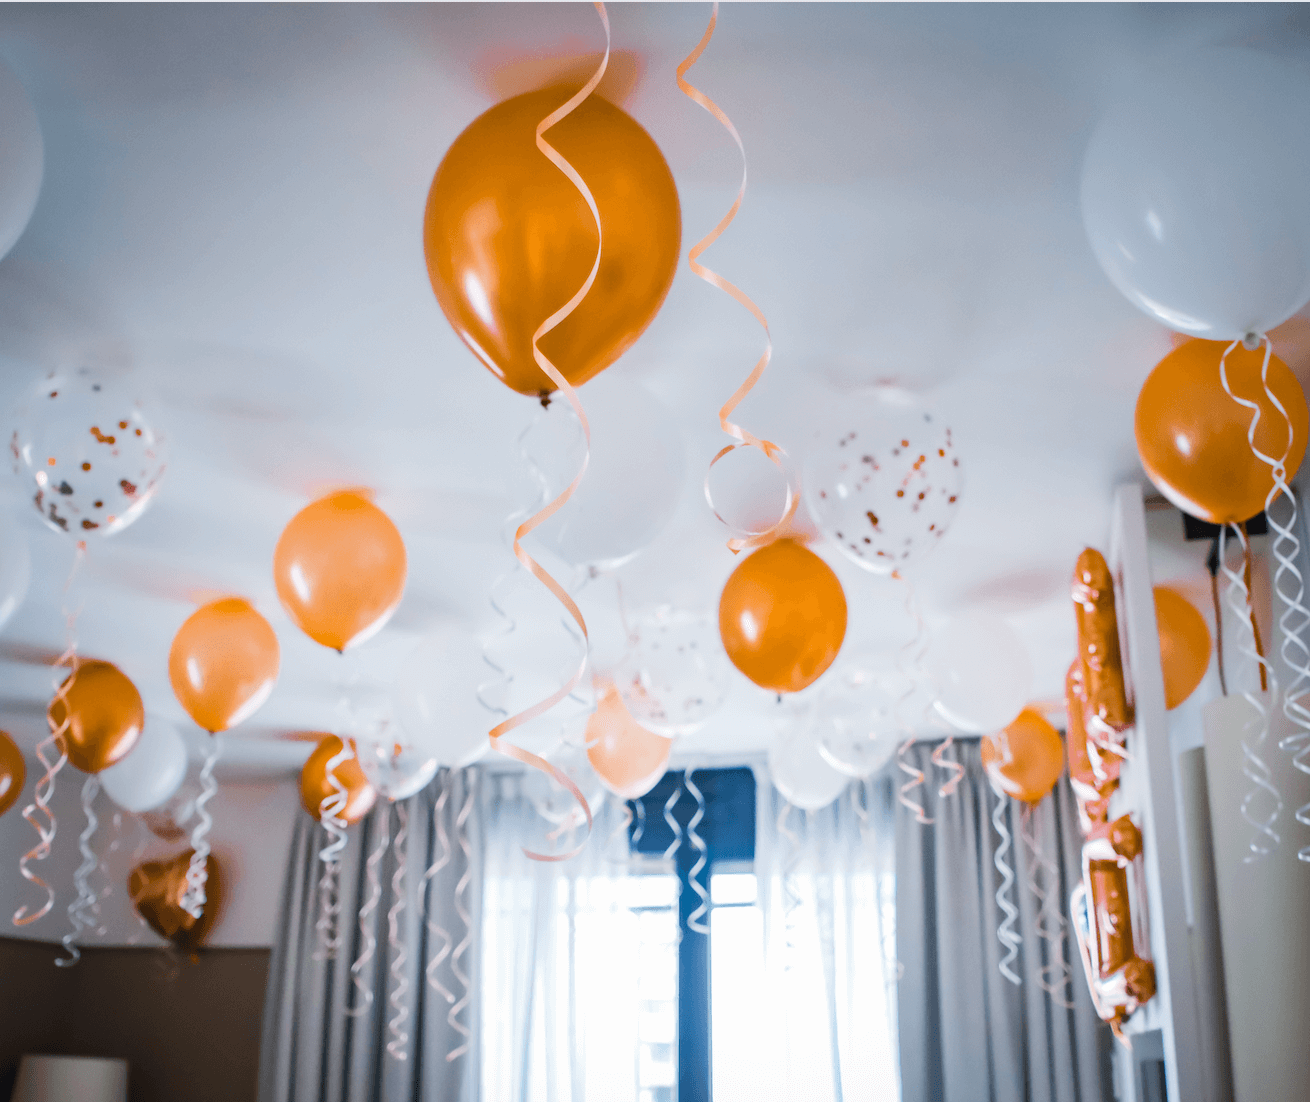 ballons gonflés à l'helium suspendus au plafond